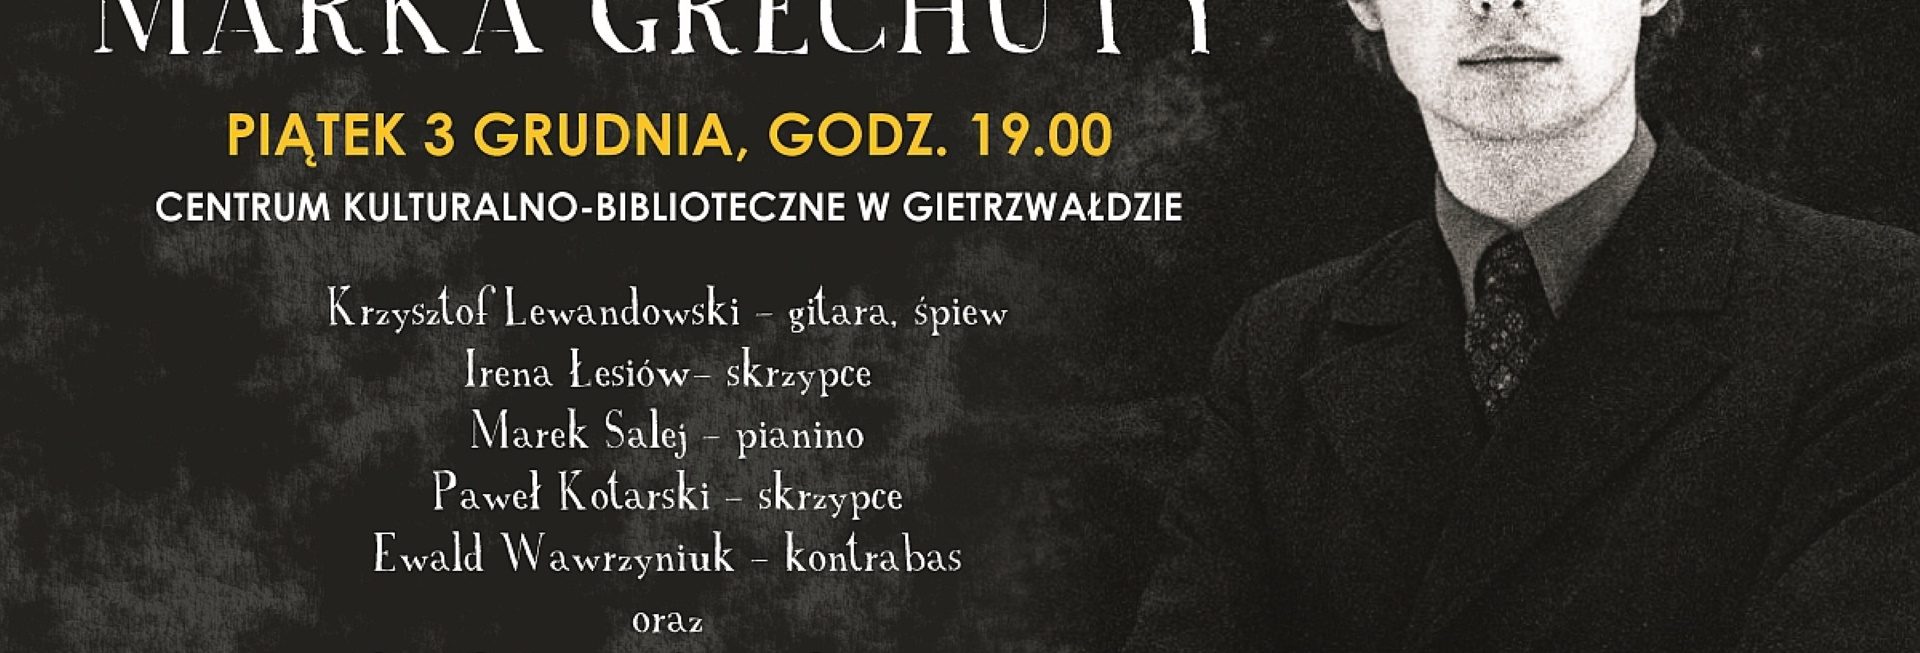 Plakat graficzny zapraszający do Gietrzwałdu na cykliczny koncert, potkanie z bardem "Pieśni Marka Grechuty" - Gietrzwałd 2021.